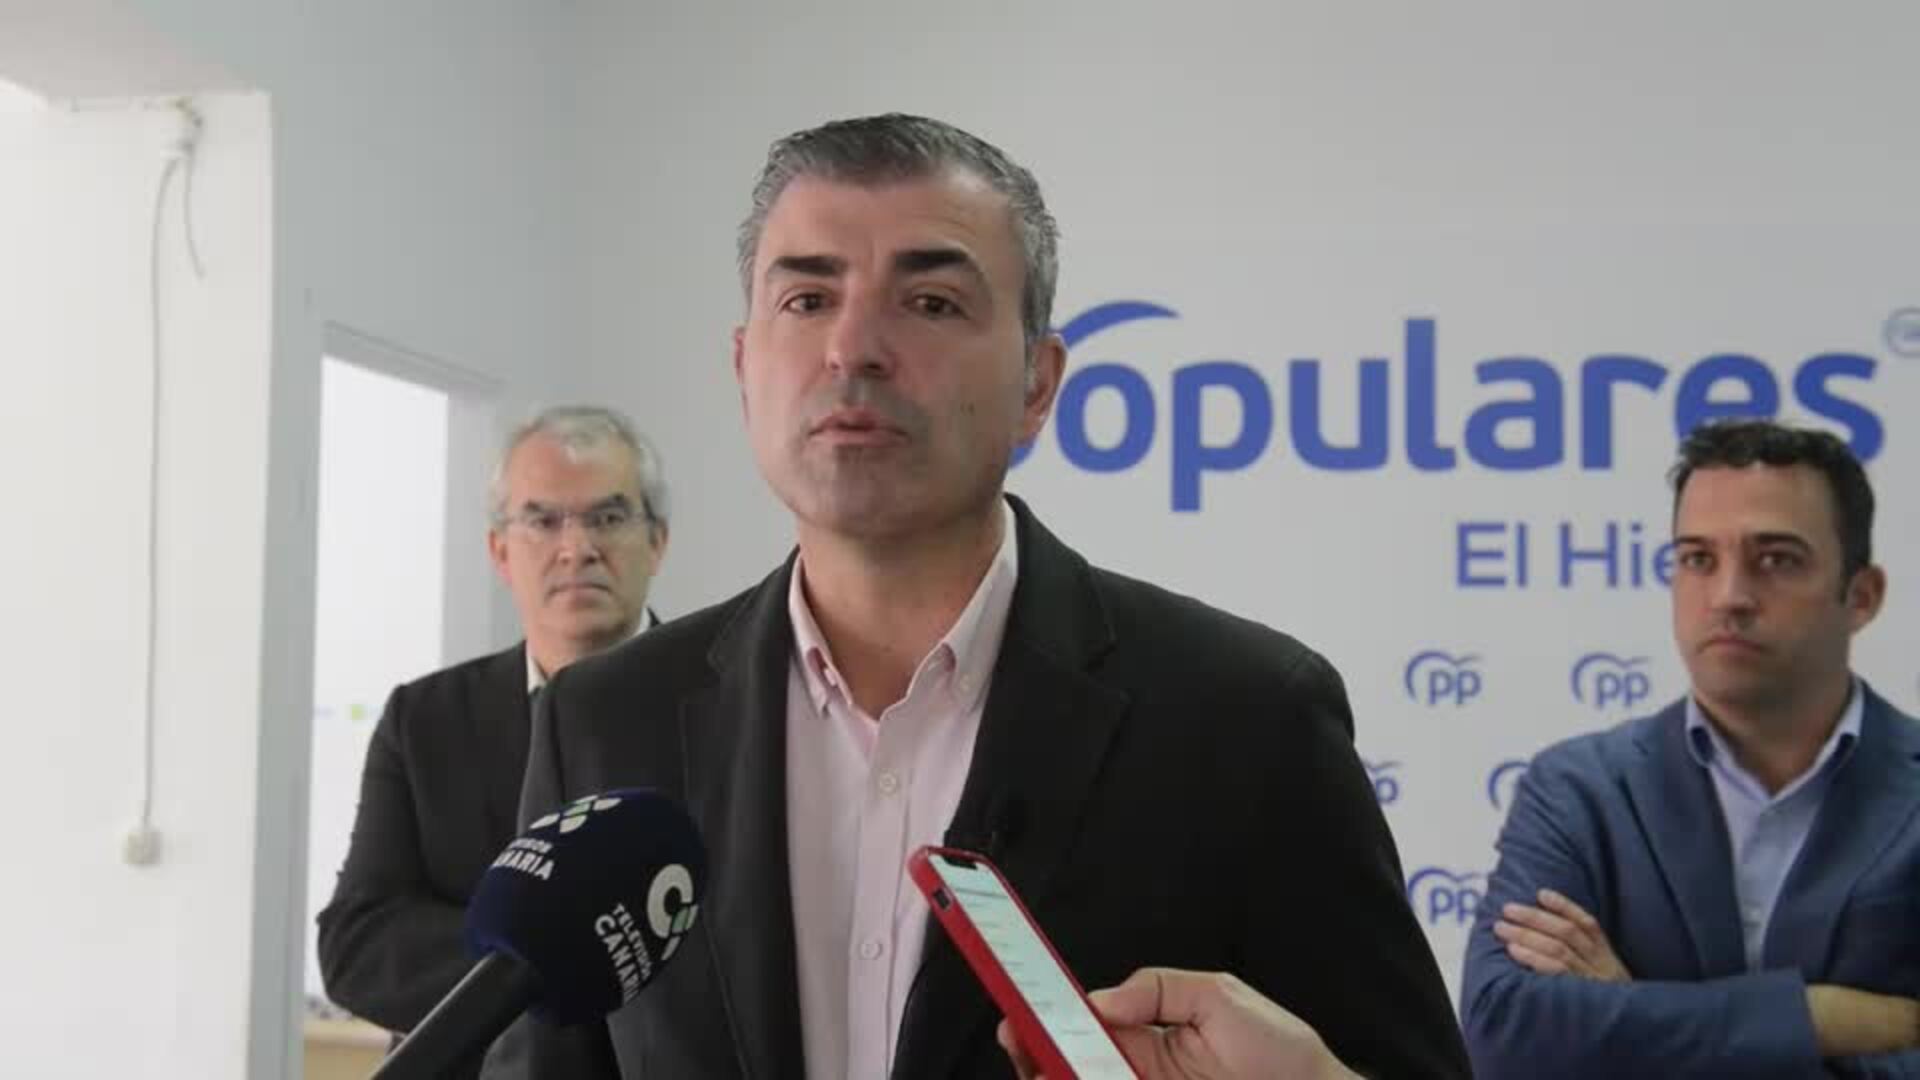 El presidente del PP de Canarias, Manuel Domínguez, presenta a los candidatos al Parlamento y al Cabildo